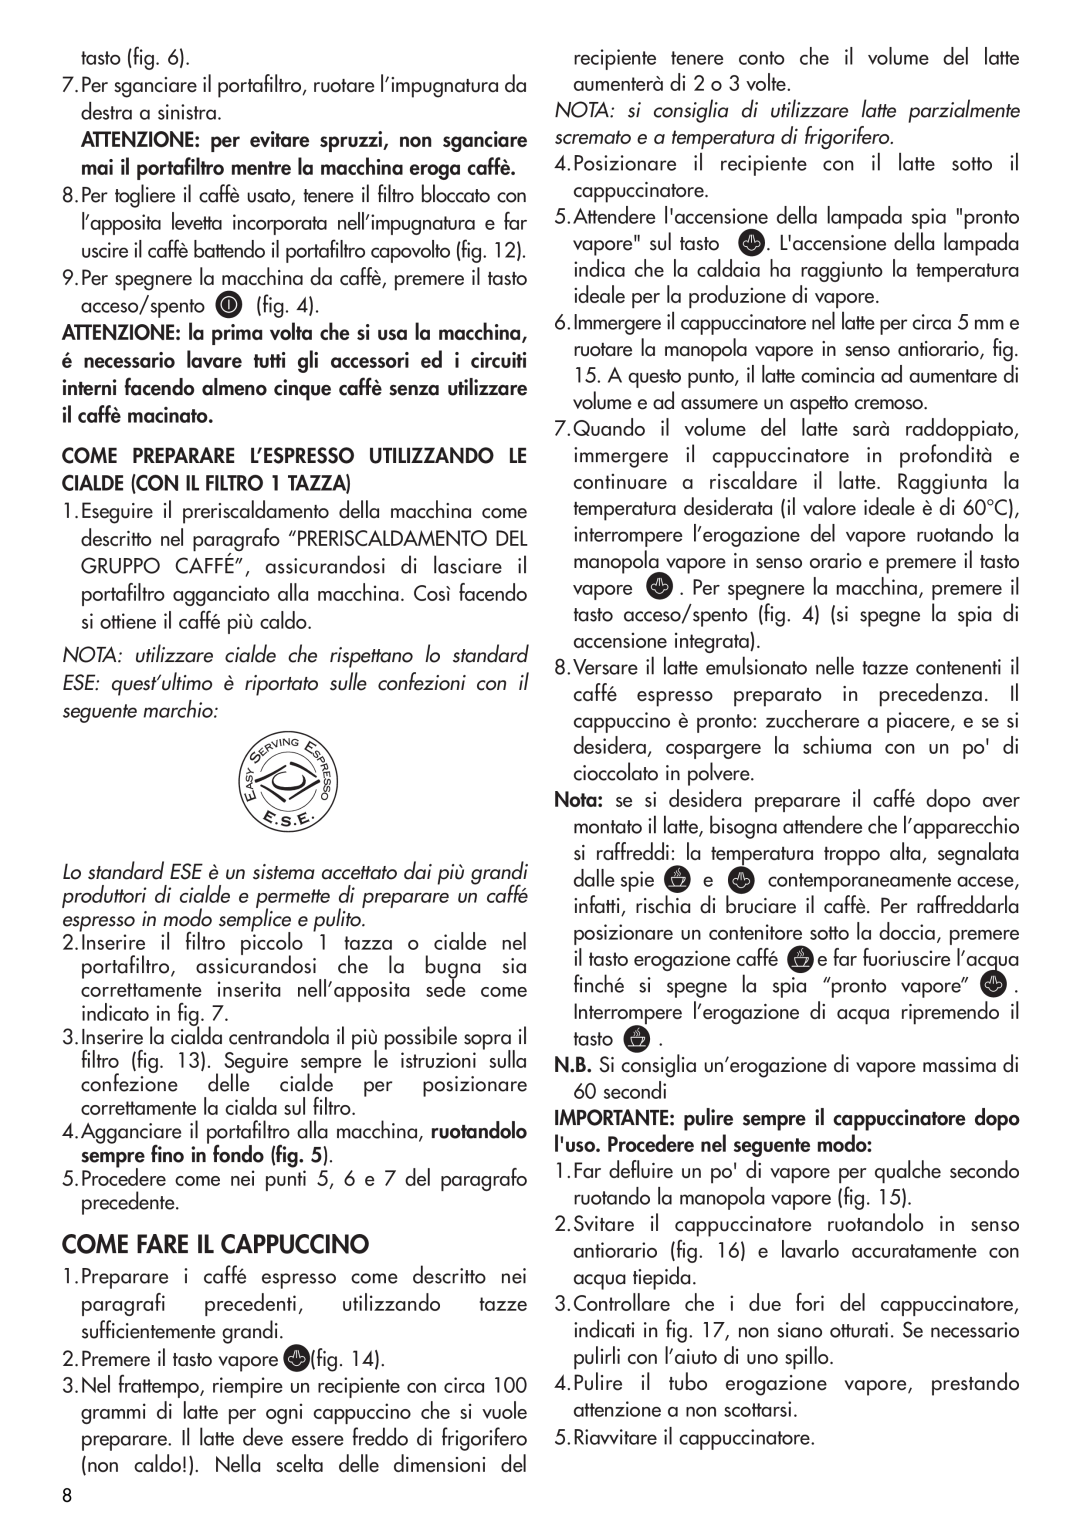 DeLonghi EC270 manual Come Fare Il Cappuccino, NOTA utilizzare cialde che rispettano lo standard 